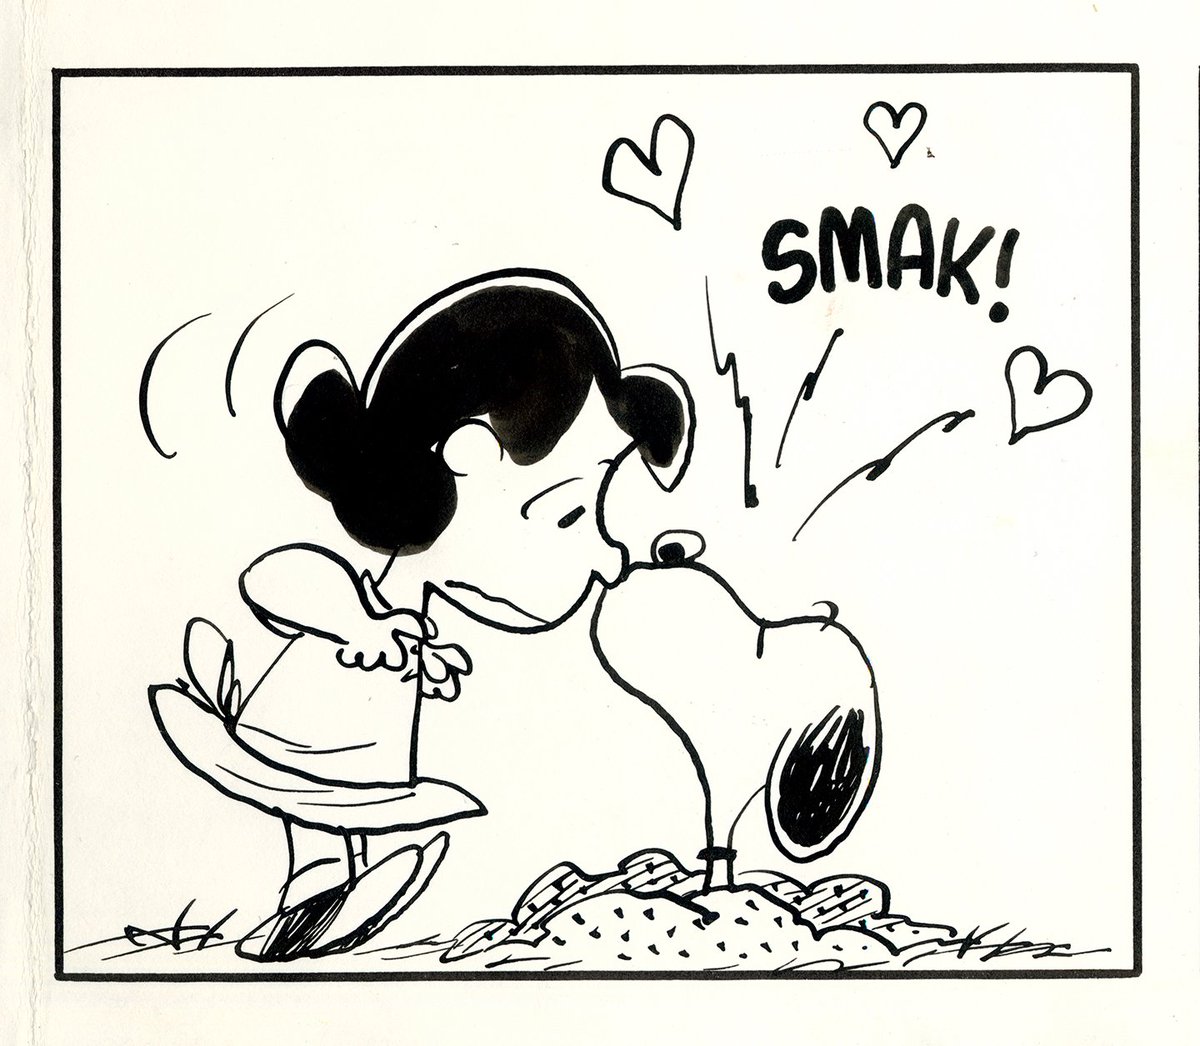 Snoopy Museum Tokyo ミュージアムから 10 8 2回展開幕です 本日は 動物のまね コーナーから プレーリードッグのまねをしたスヌーピーがルーシーにsmak チュッ 子犬だったスヌーピーは 1950年代後半から体つきがなめらかになり動きに自由